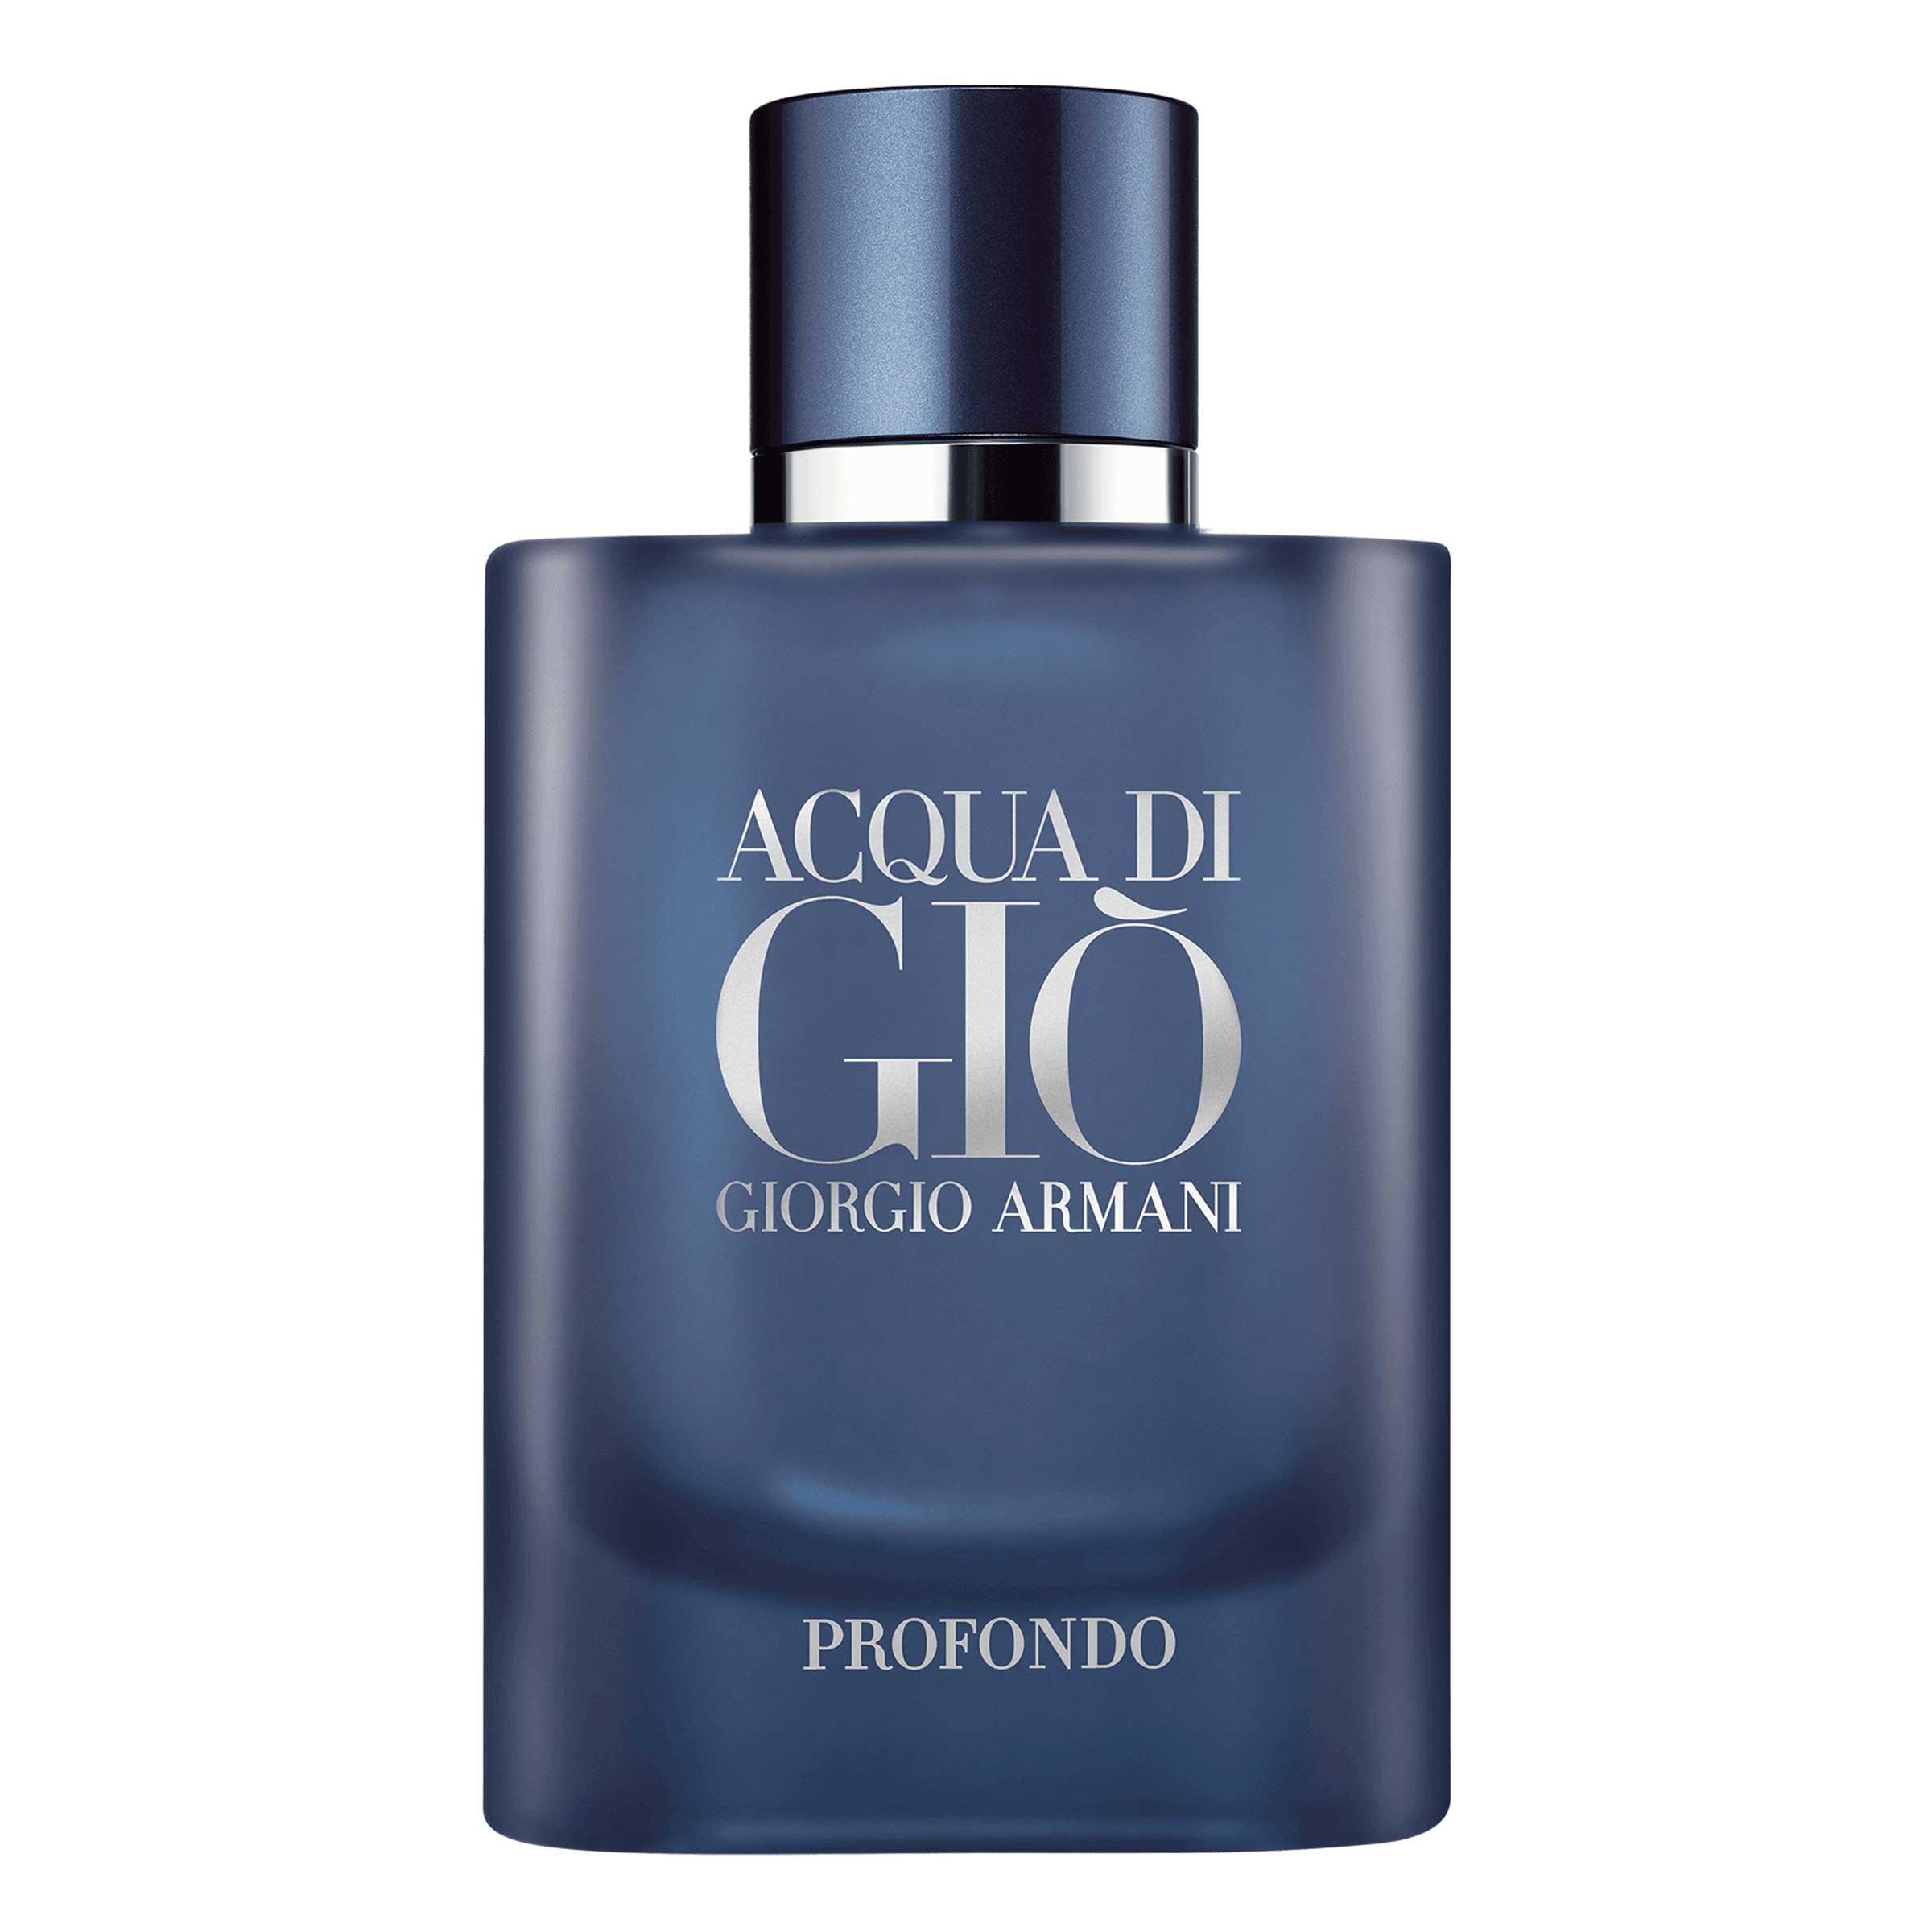 Acqua di Giò Profondo Fragrance for Him | Armani beauty